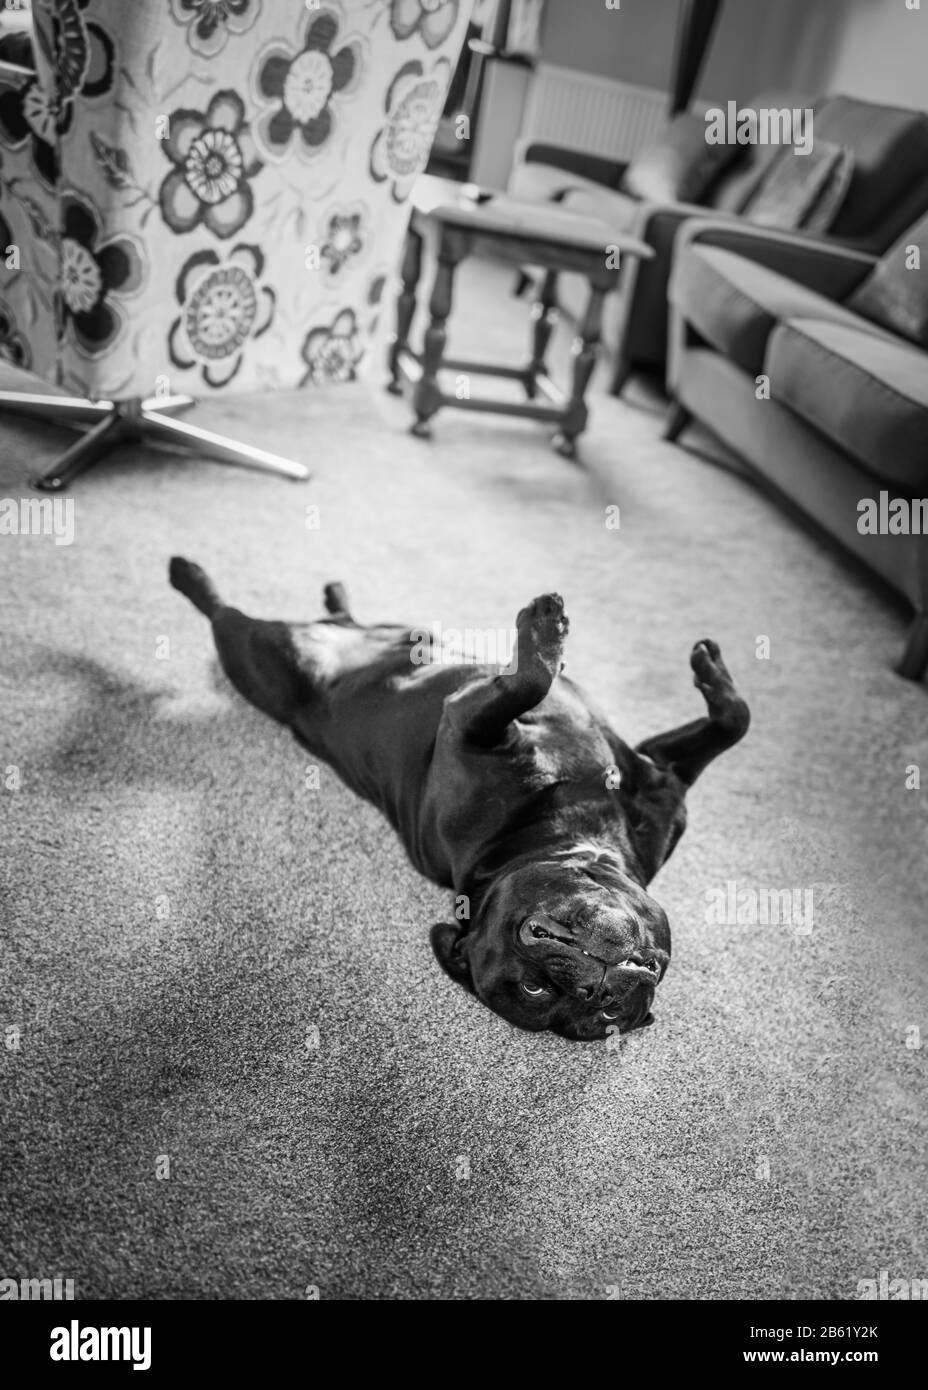 À l'envers Staffordshire bull terrier chien allongé sur son dos dans un salon avec ses jambes dans l'air. Il a l'air détendu et heureux. En monochrome Banque D'Images